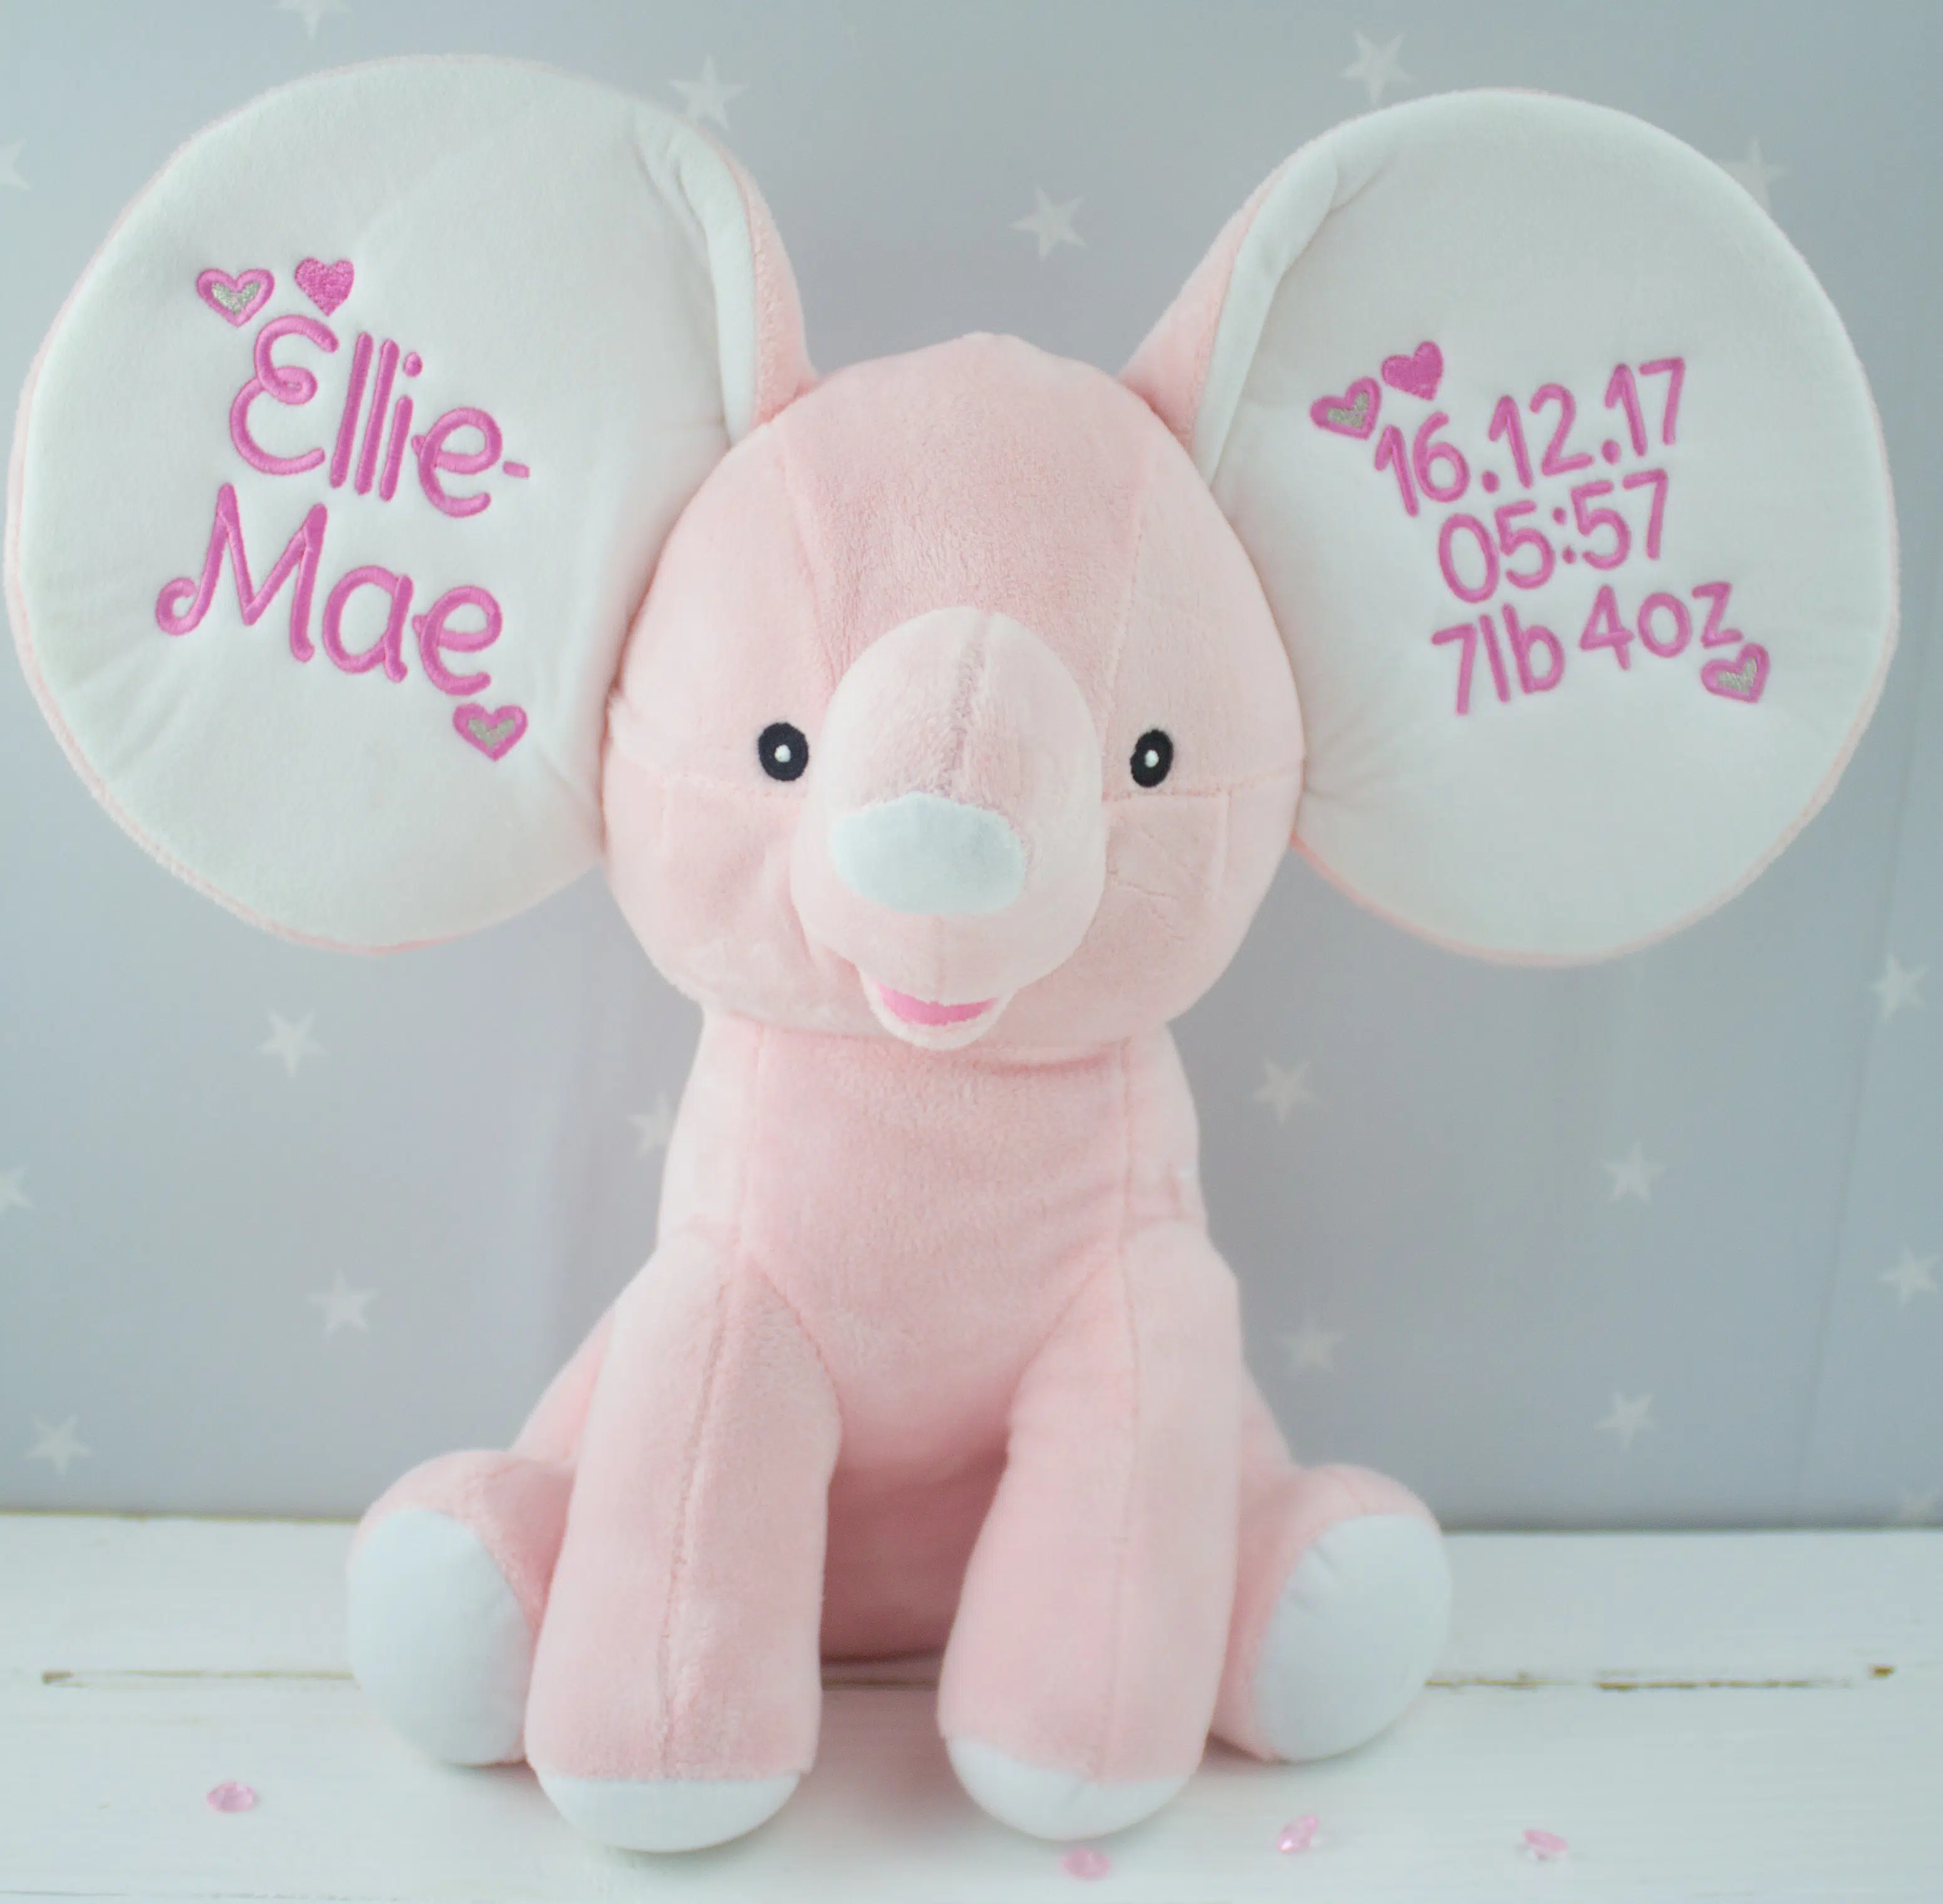 Personalised elephant soft toy